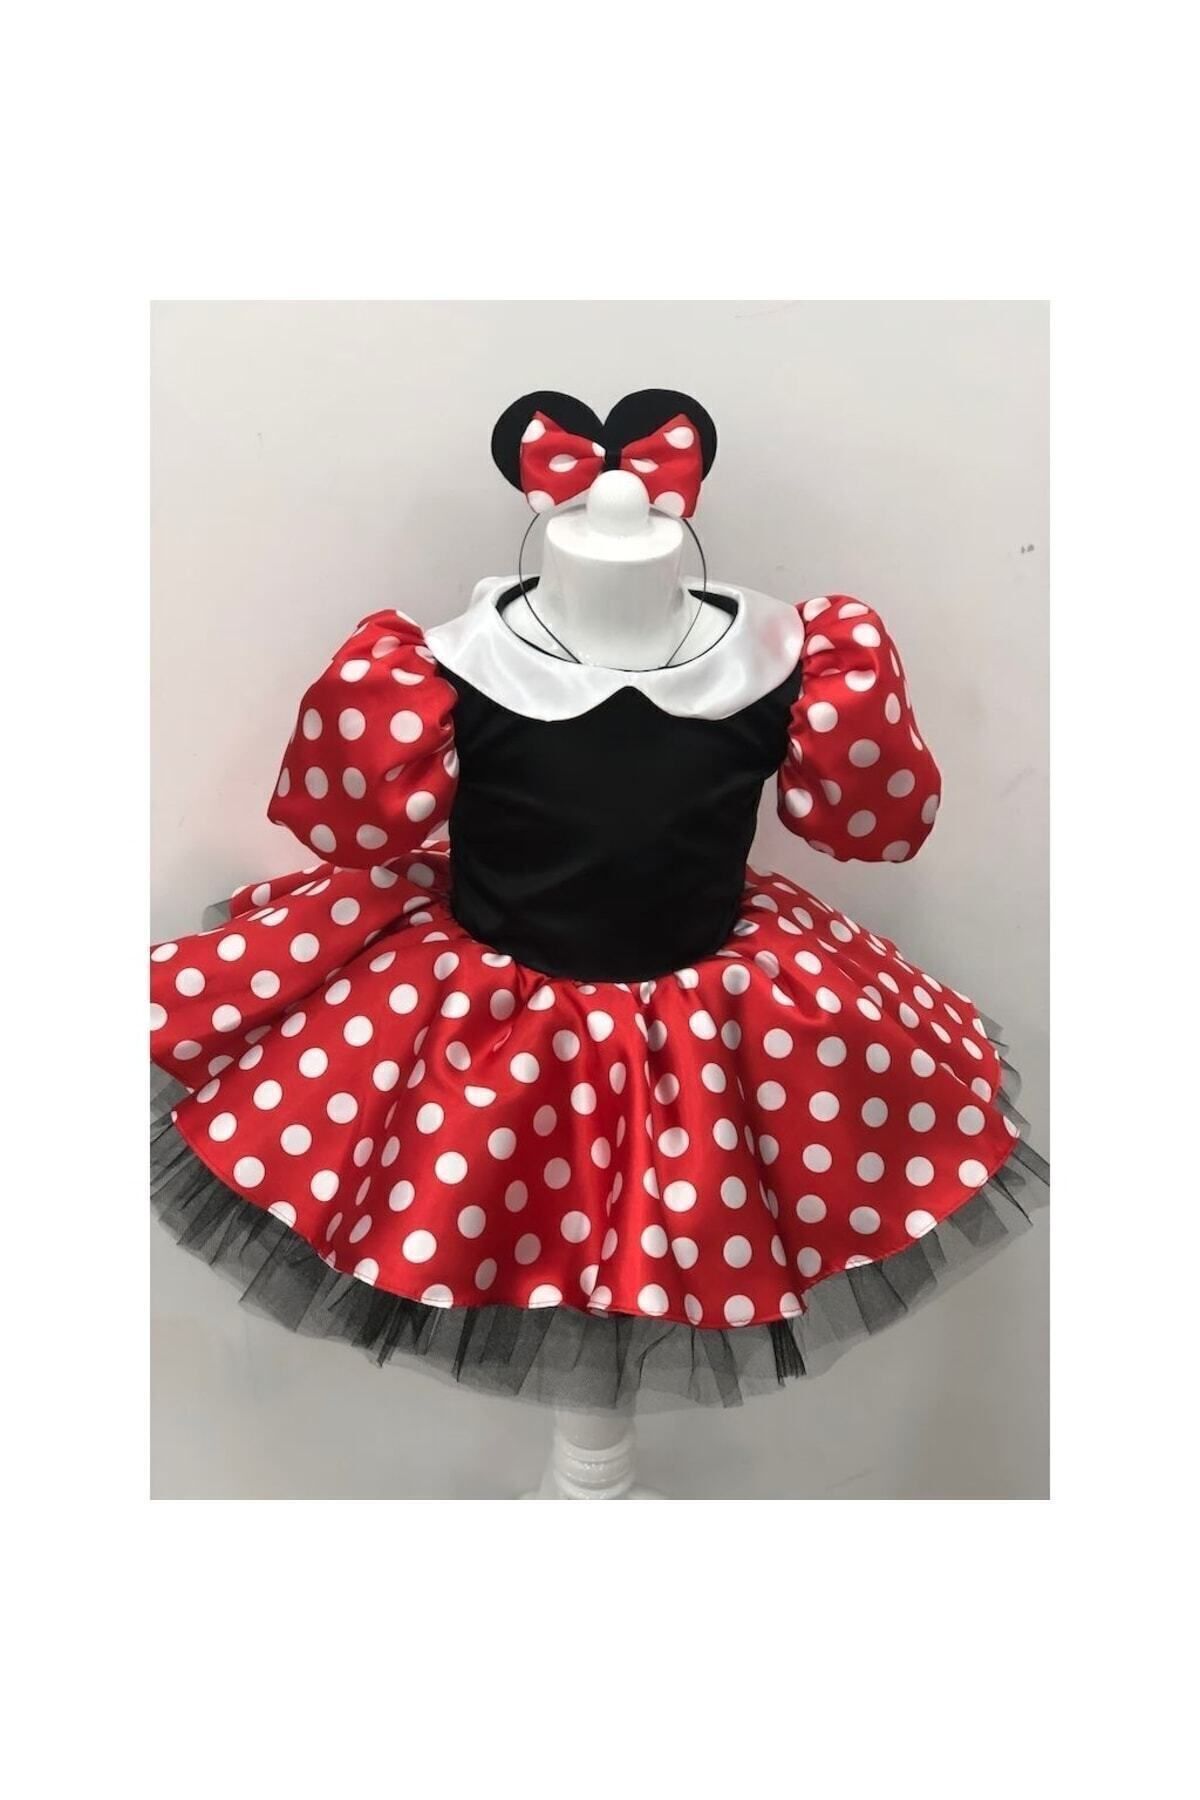 YAĞMUR KOStütüM Minnie Mouse Kız Çocuk Kırmızı Puantiyeli Doğum Günü Elbisesi Ve Parti Kostümü